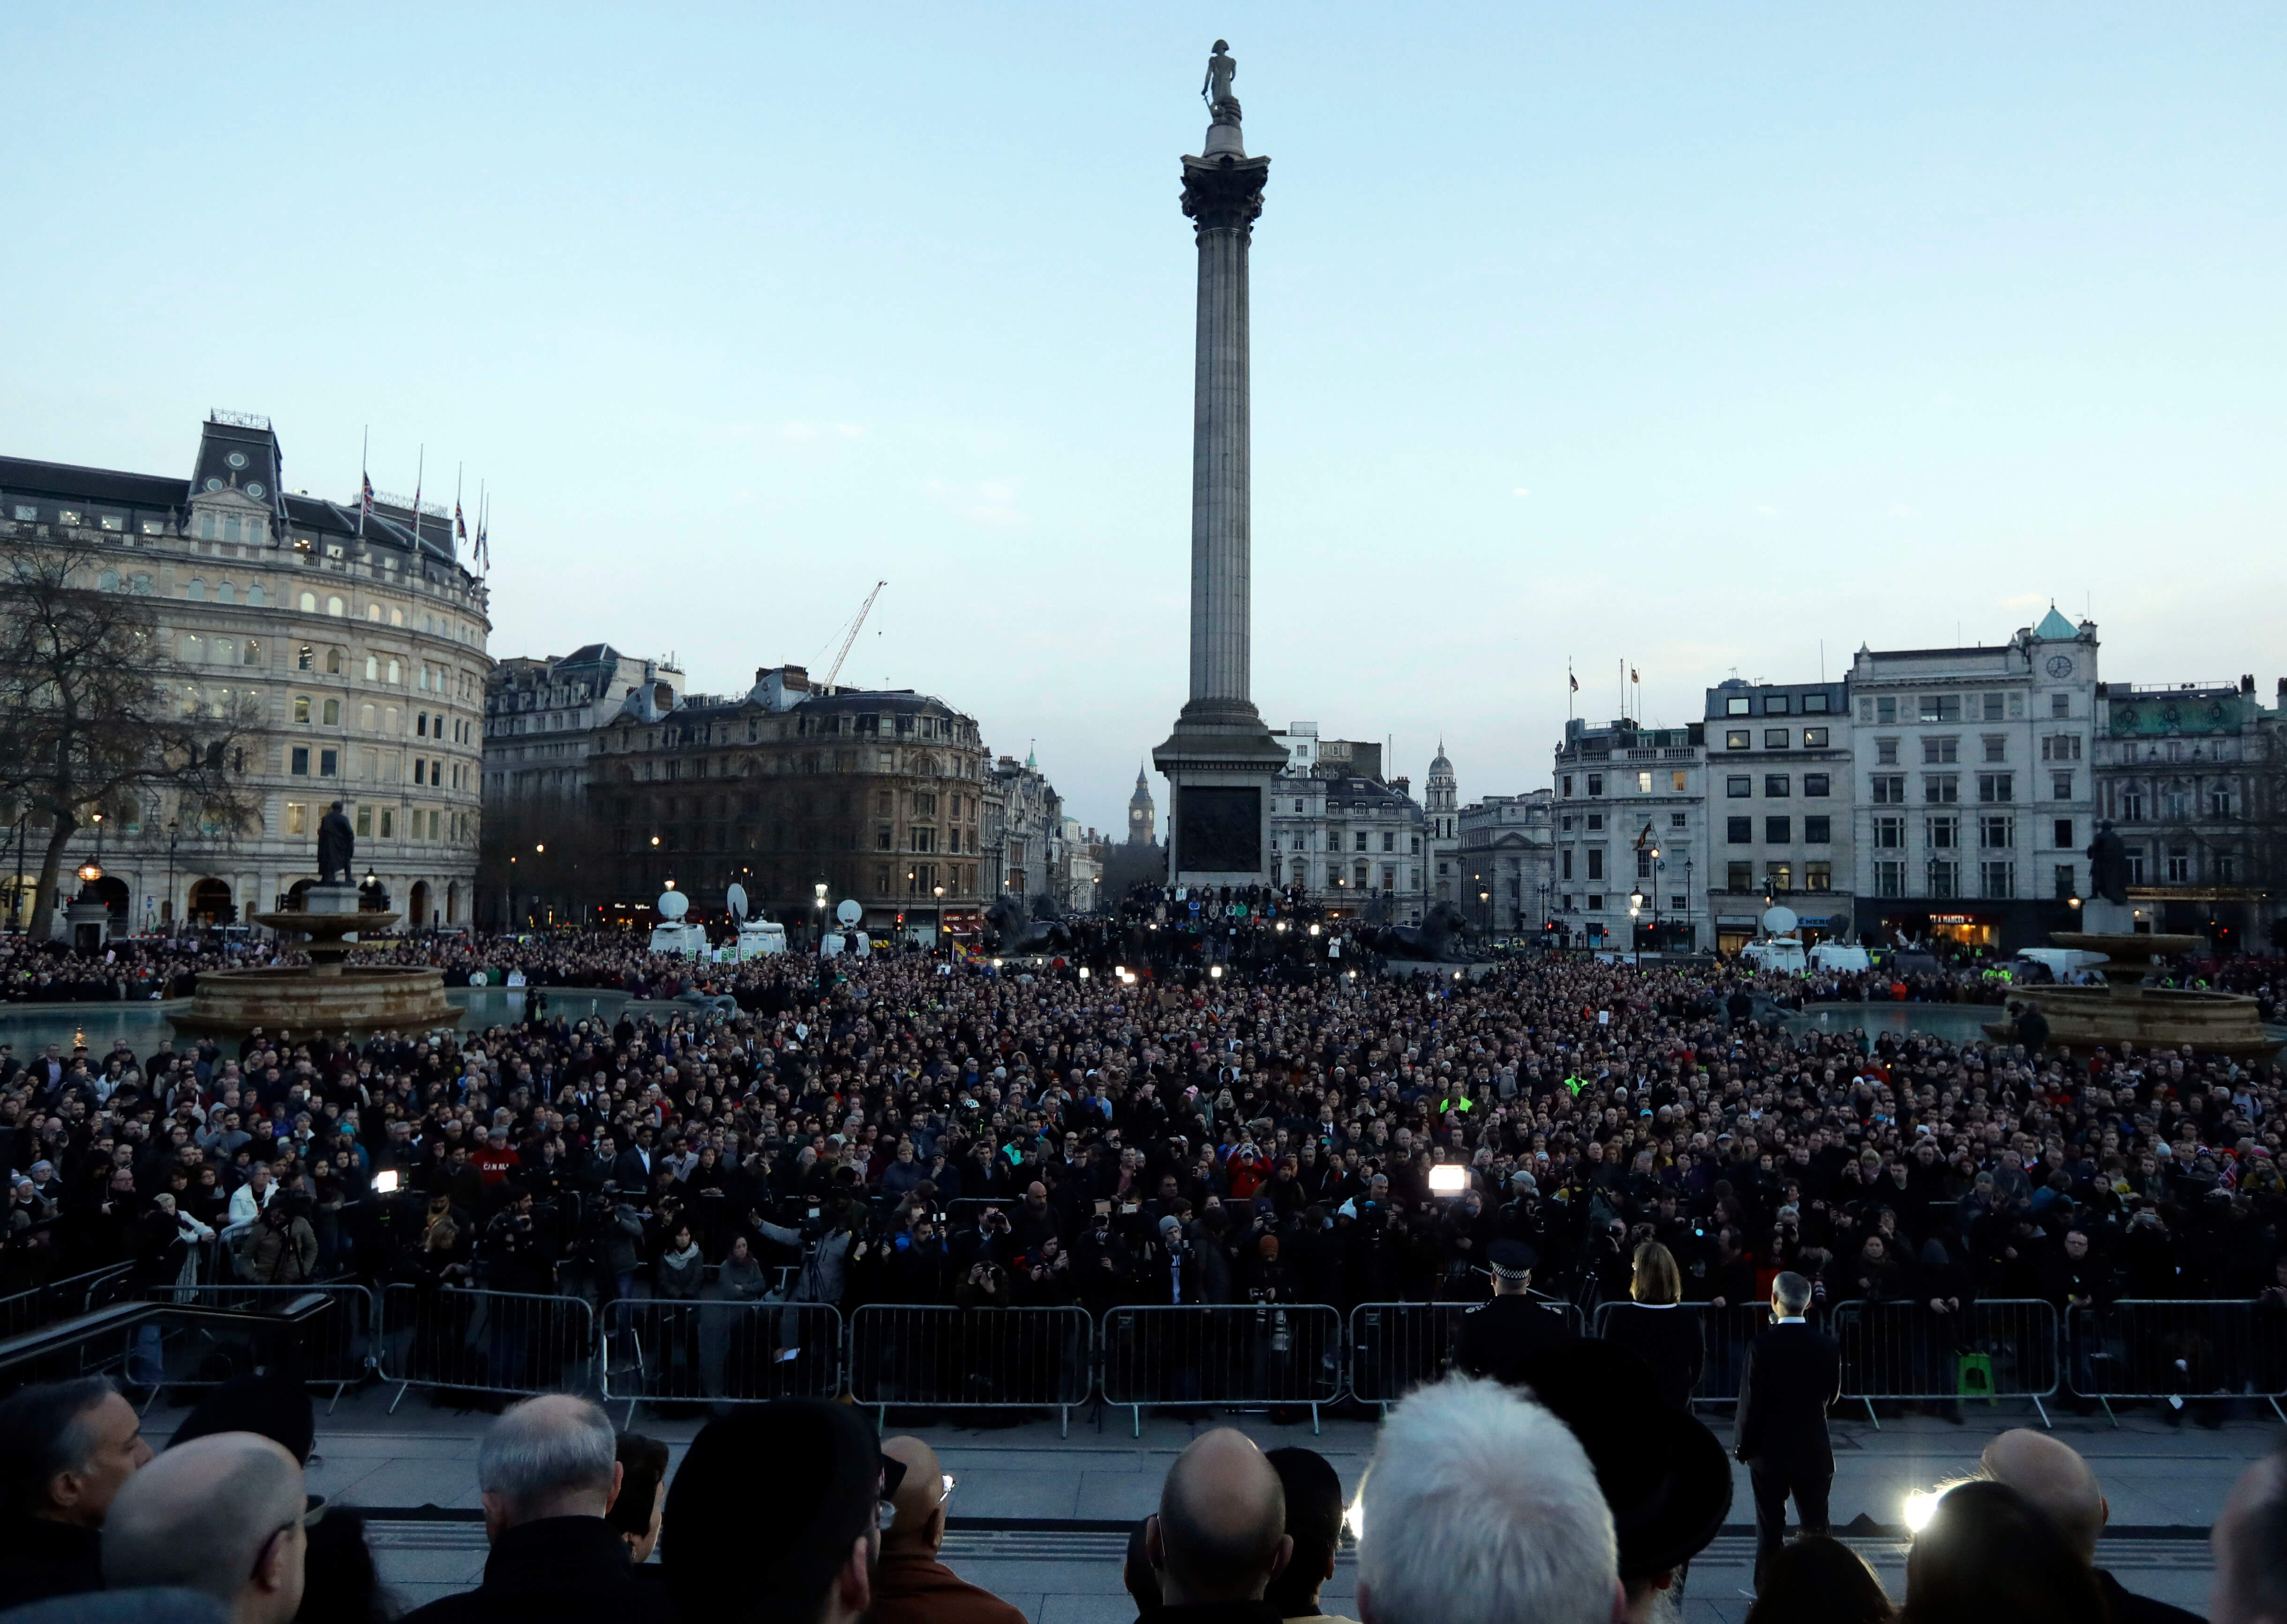 Rinden homenaje en la Plaza Trafalgar de Londres a víctimas del atentado (AP)